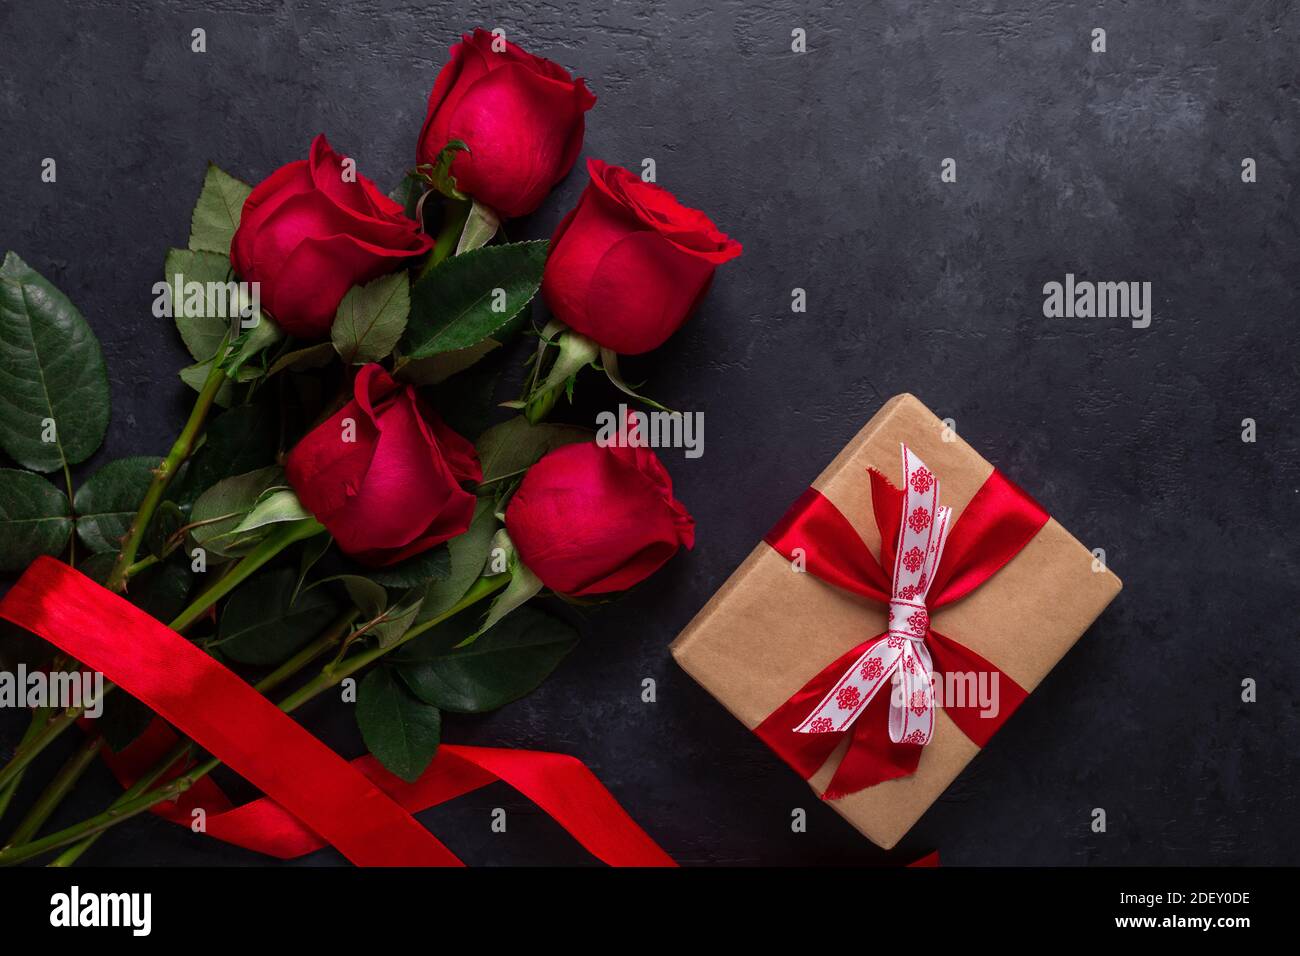 Black rose box flower box Valentine's day bouquet valentines day gift